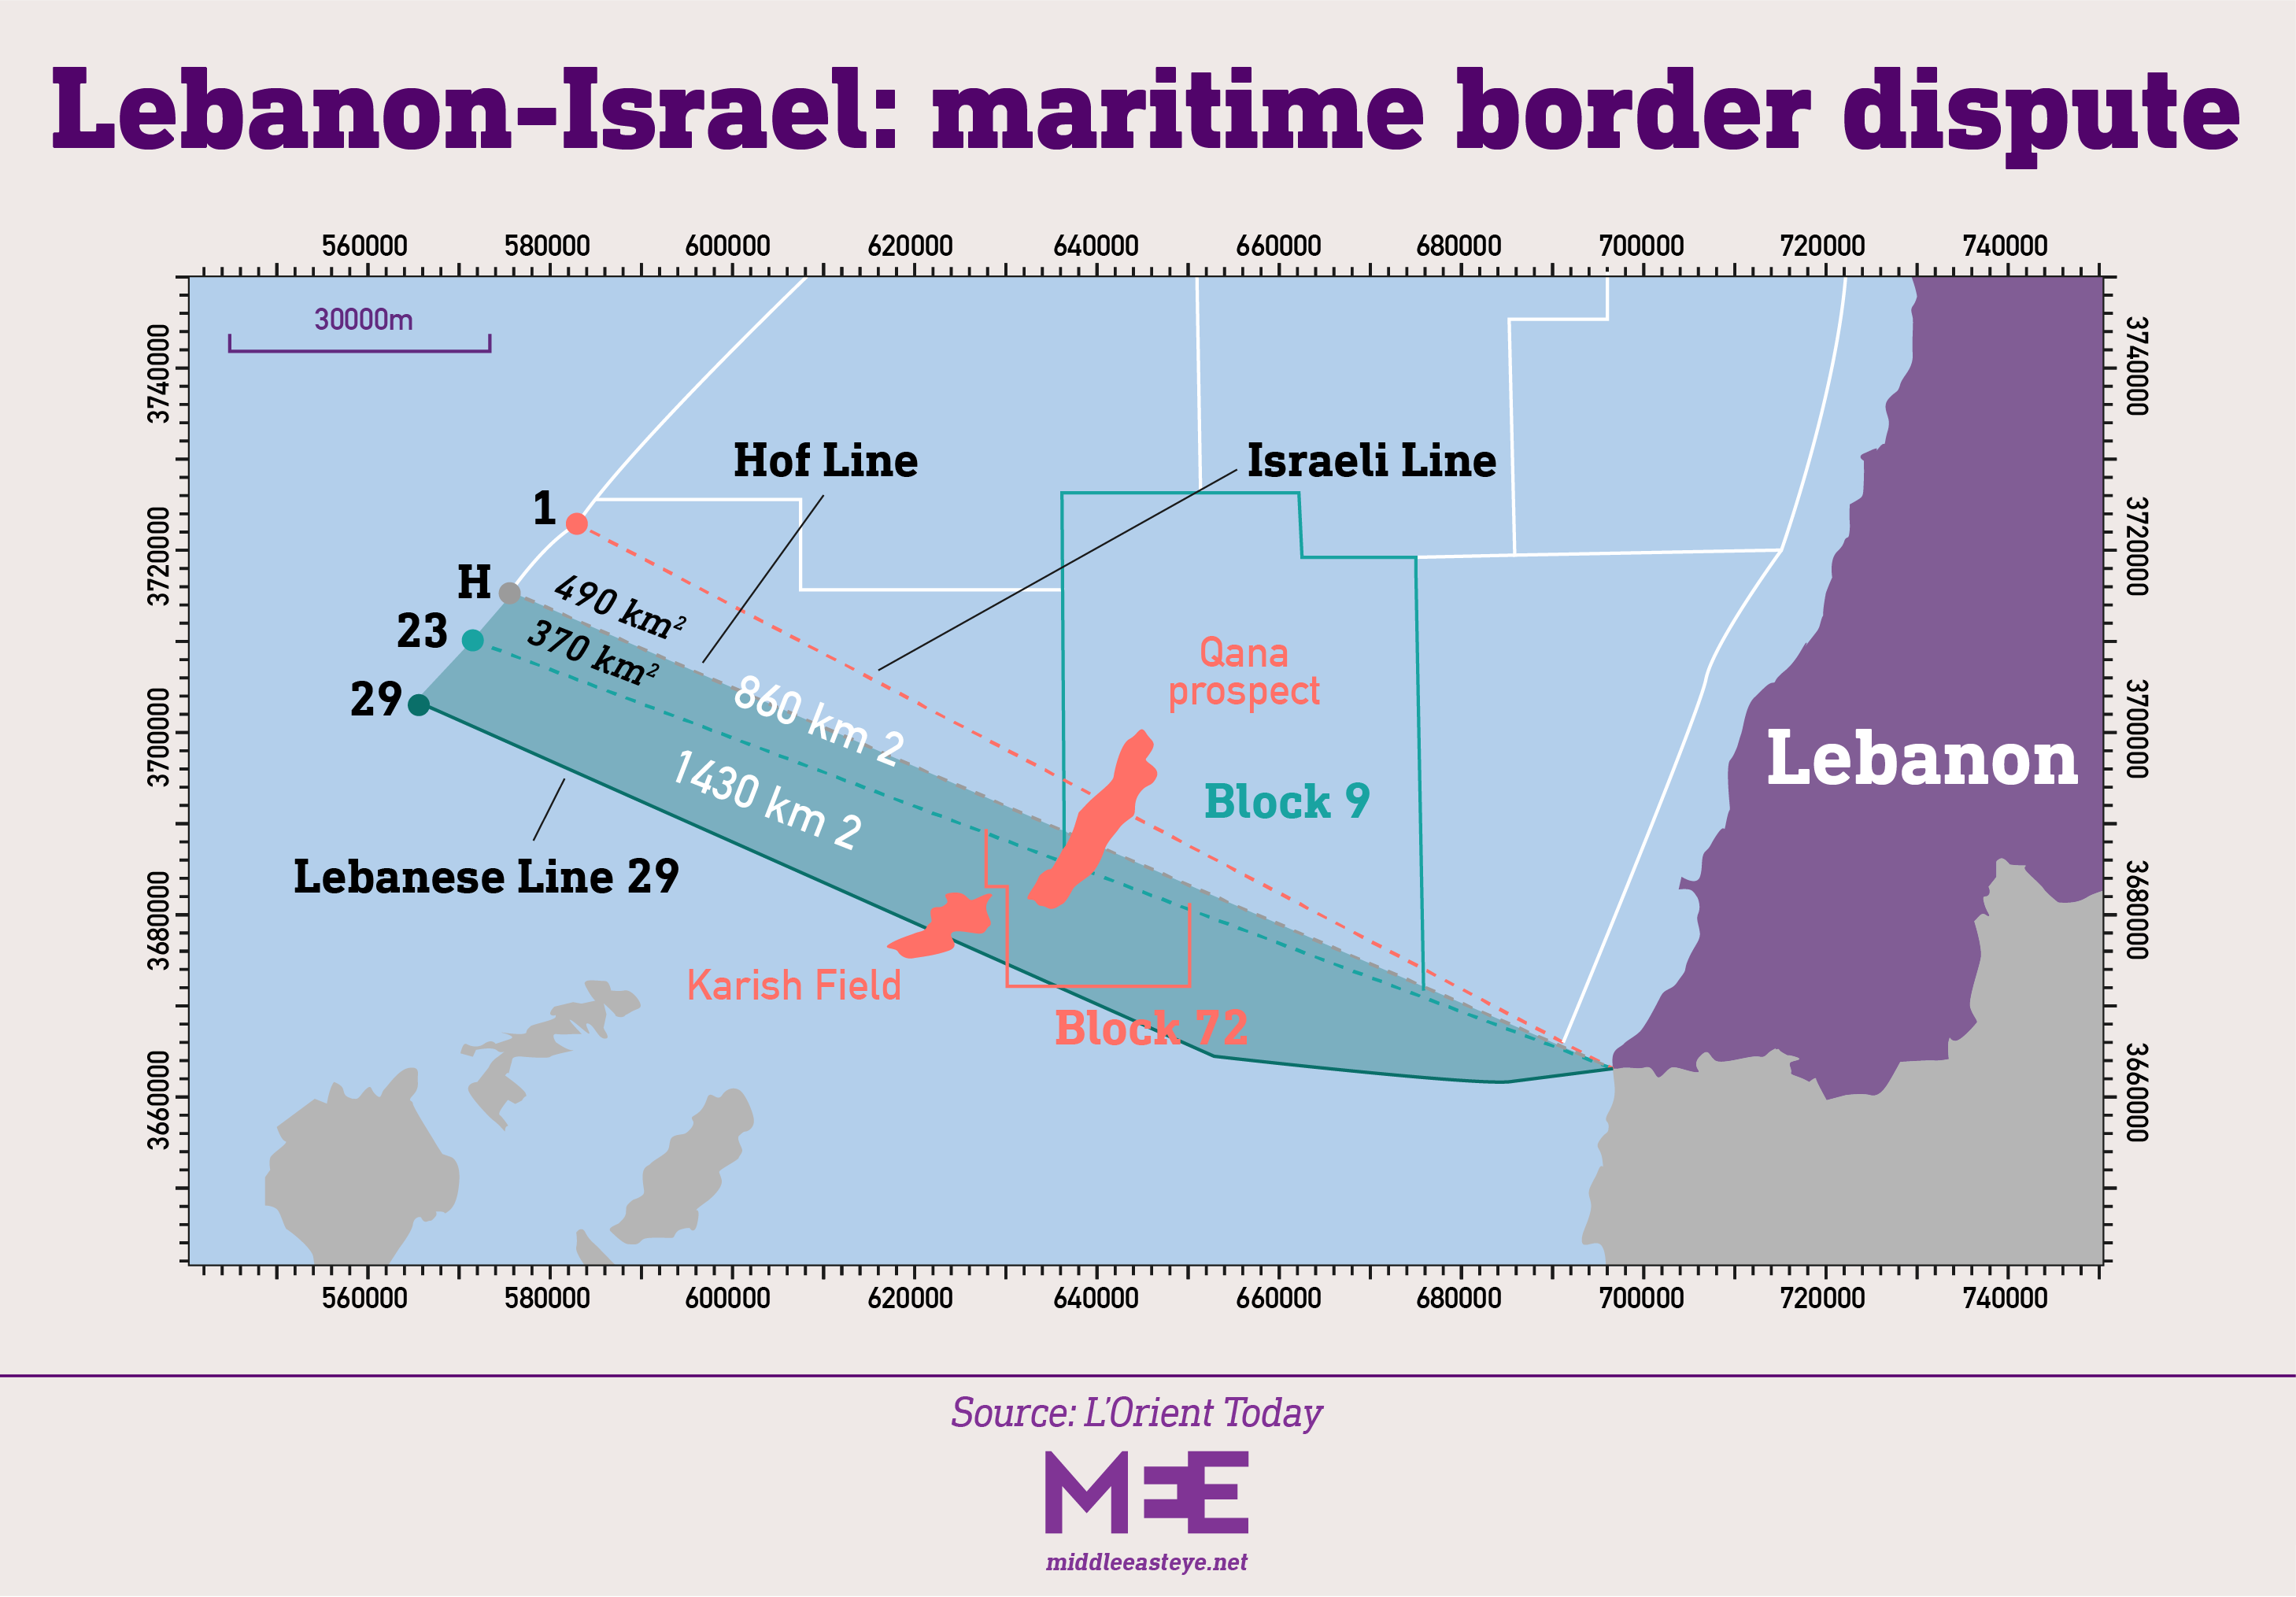 Libanon-Israel søgrænsekonflikt